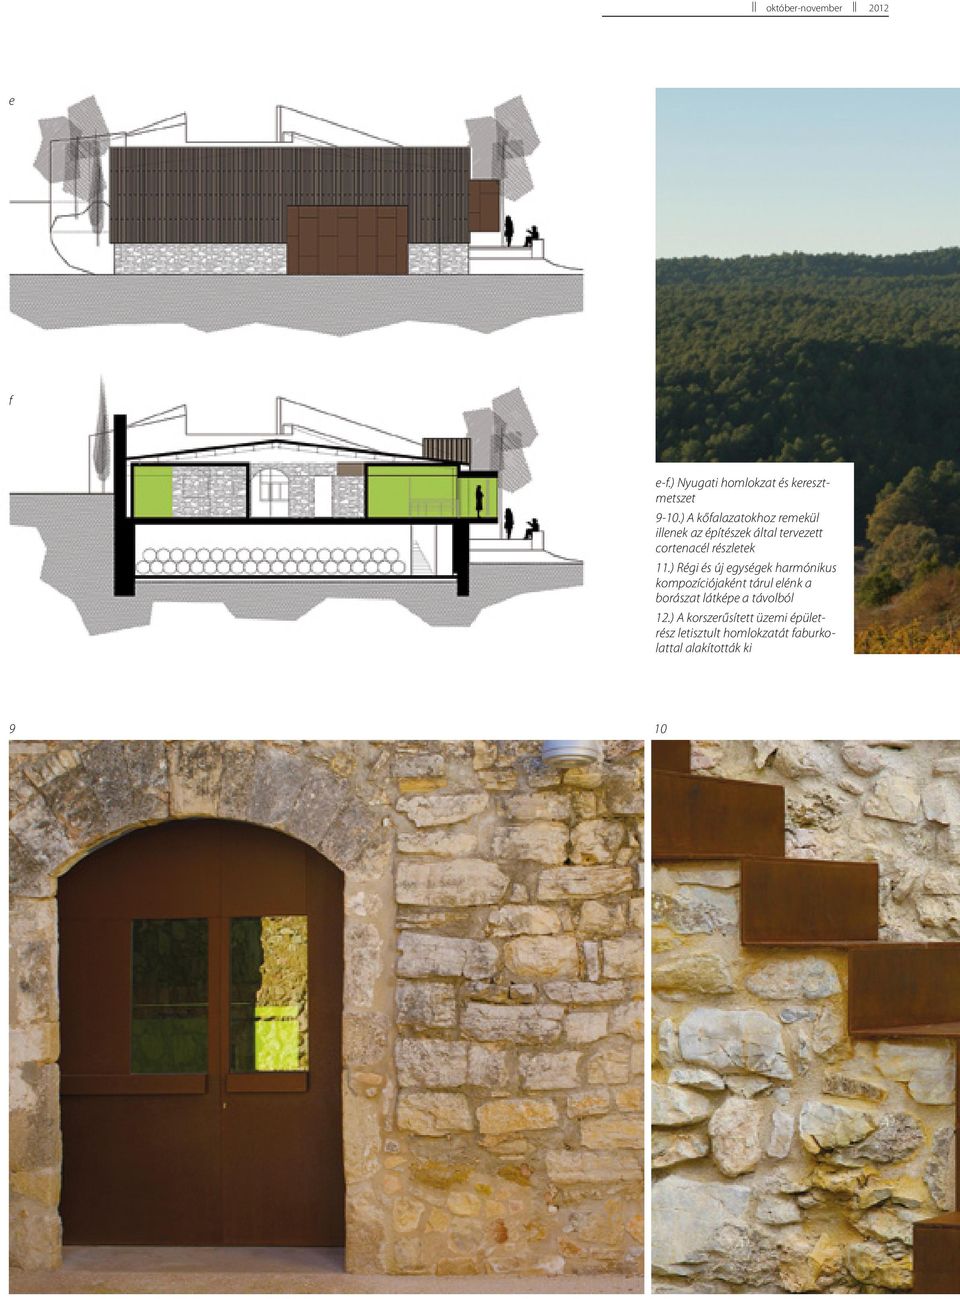 ) A kőfalazatokhoz remekül illenek az építészek által tervezett cortenacél részletek 11.